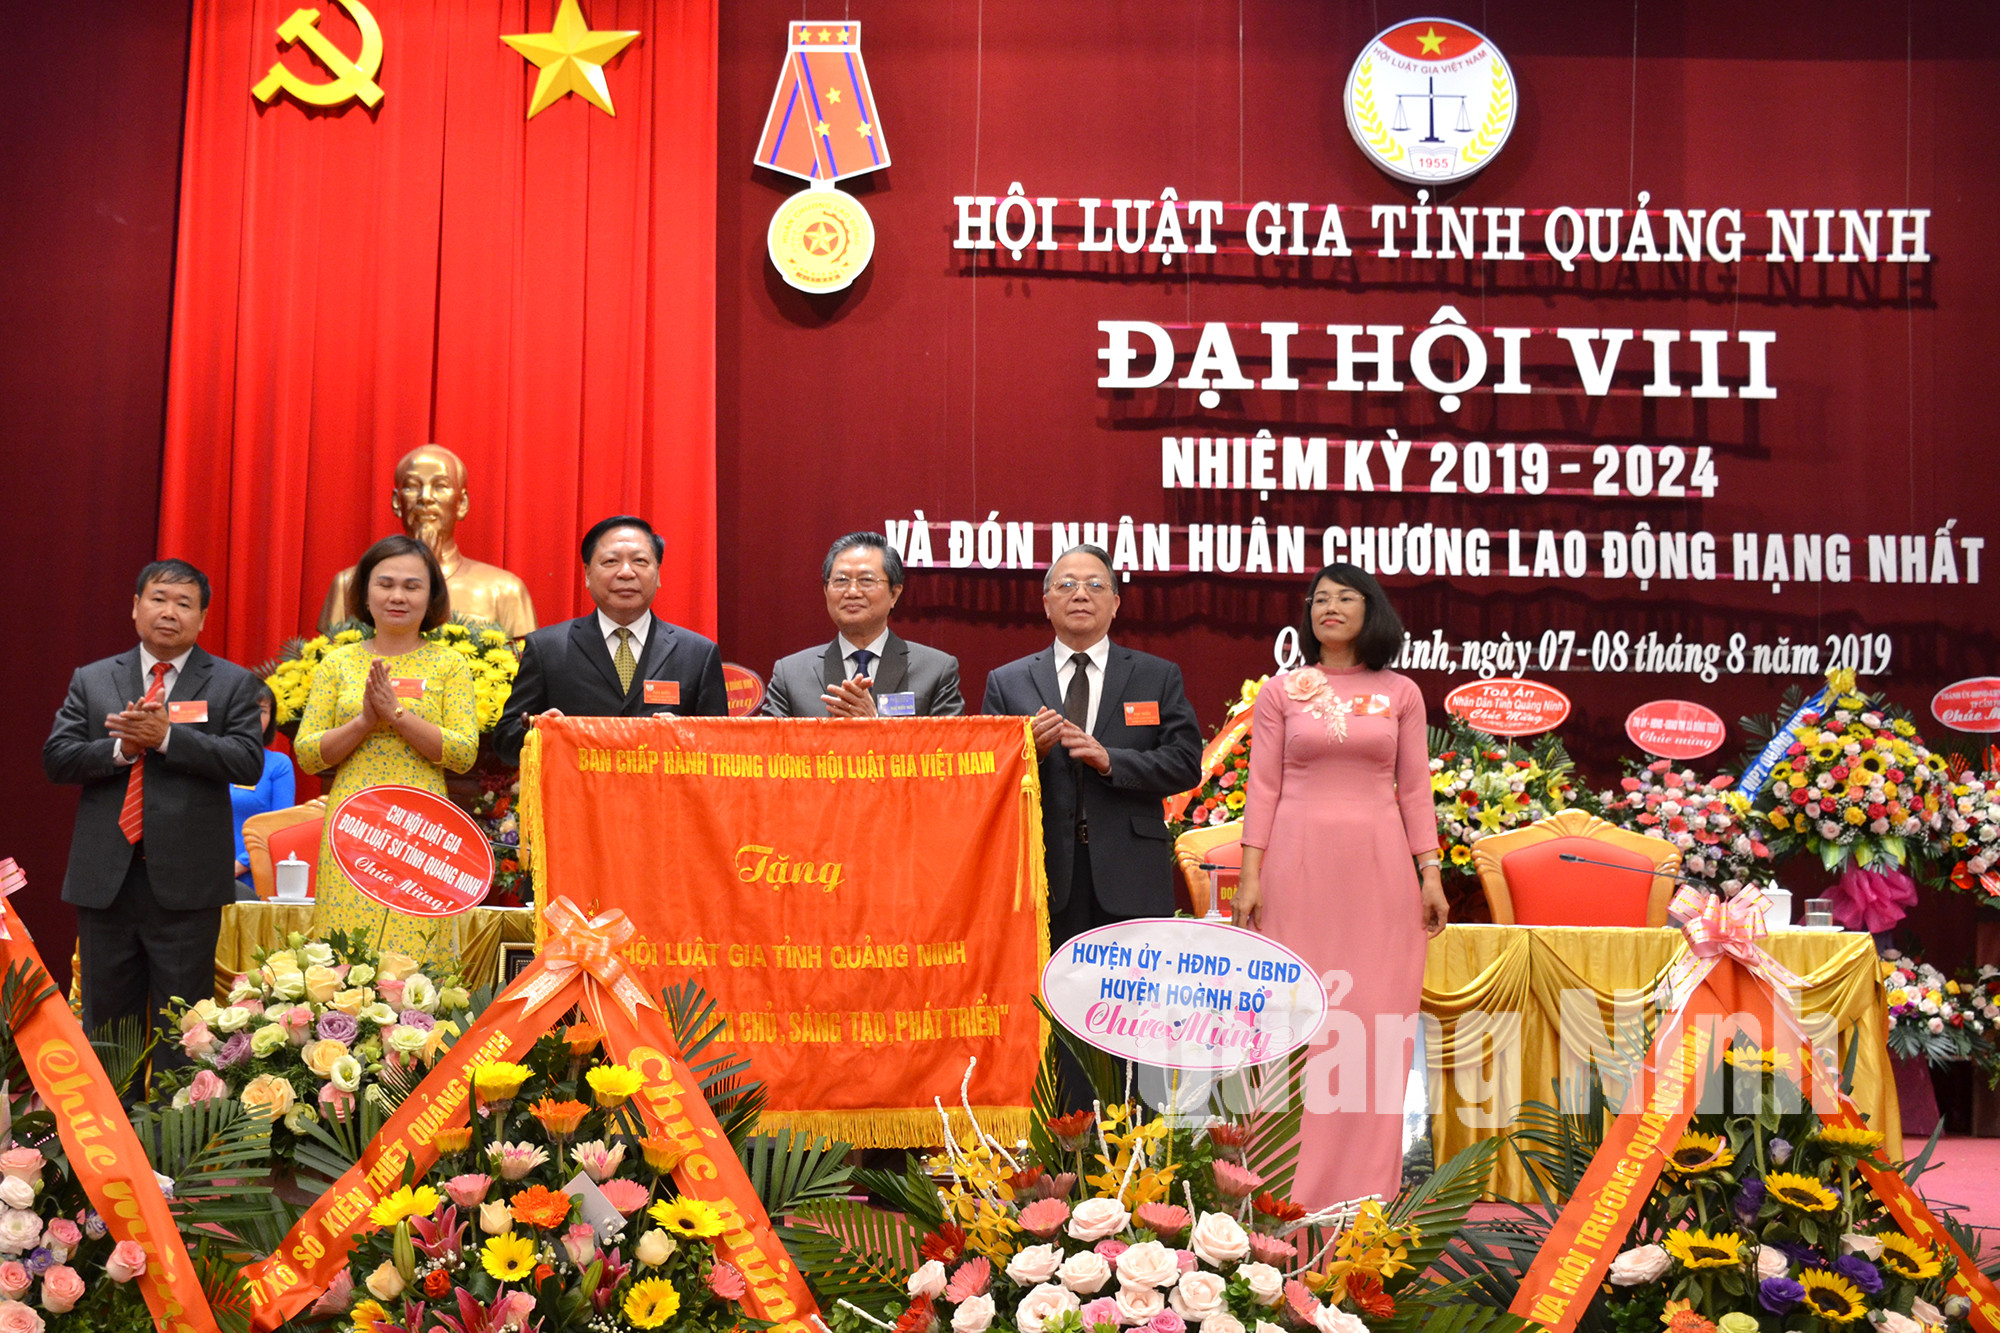 Đồng chí Lê Minh Tâm, Phó Chủ tịch, Tổng thư ký Hội Luật gia Việt Nam trao tặng Hội Luật gia tỉnh Quảng Ninh bức trướng mang dòng chữ 